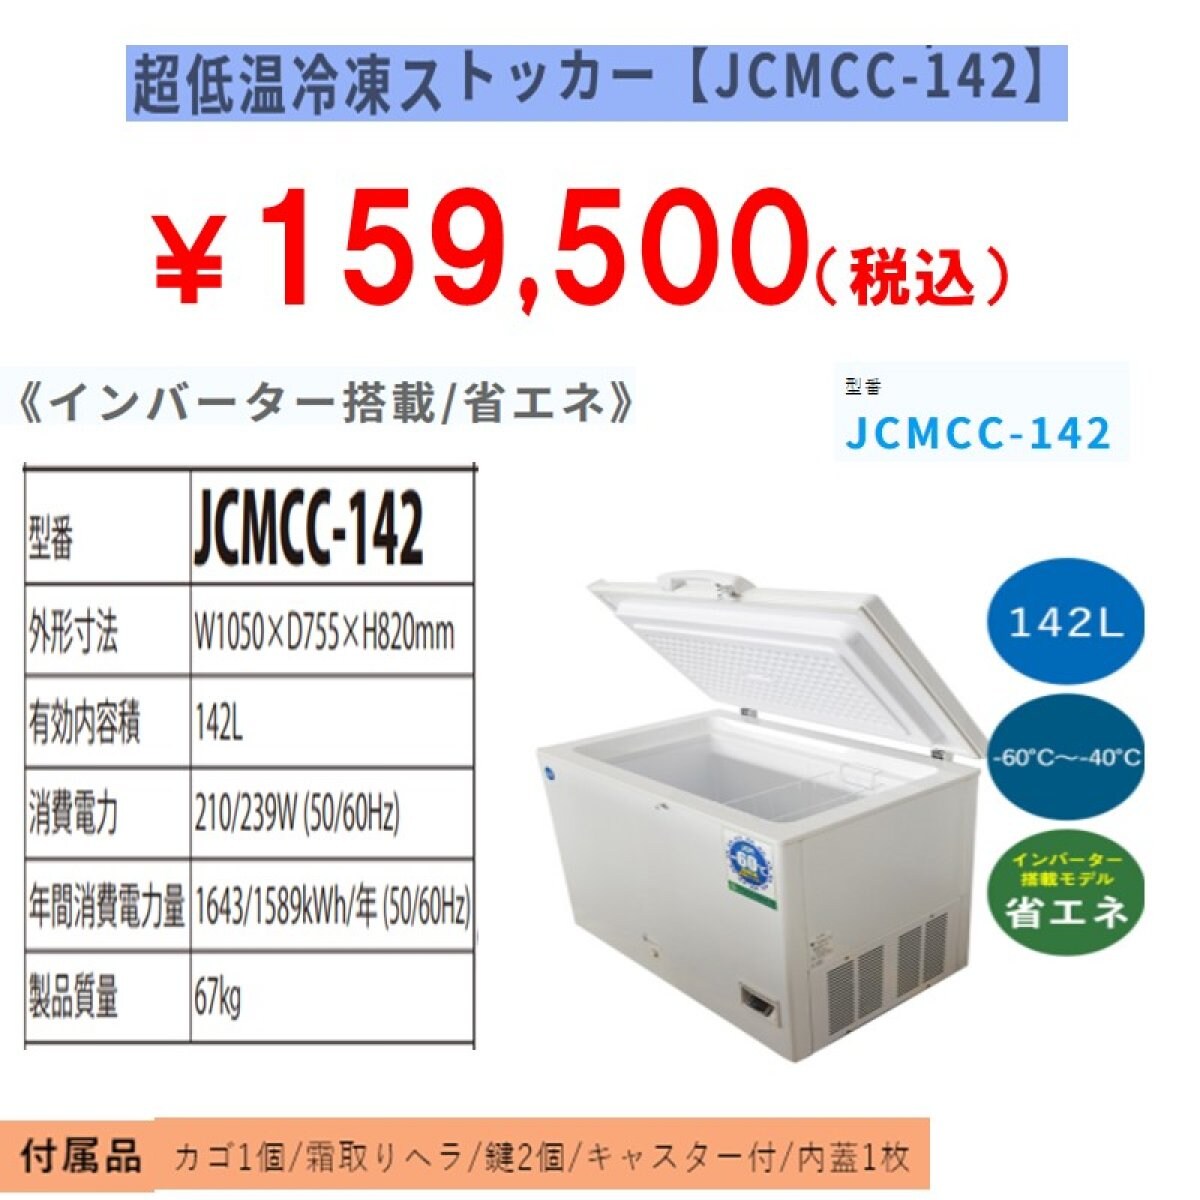 業務用超低温冷凍ストッカー 142L [JCMCC-142]